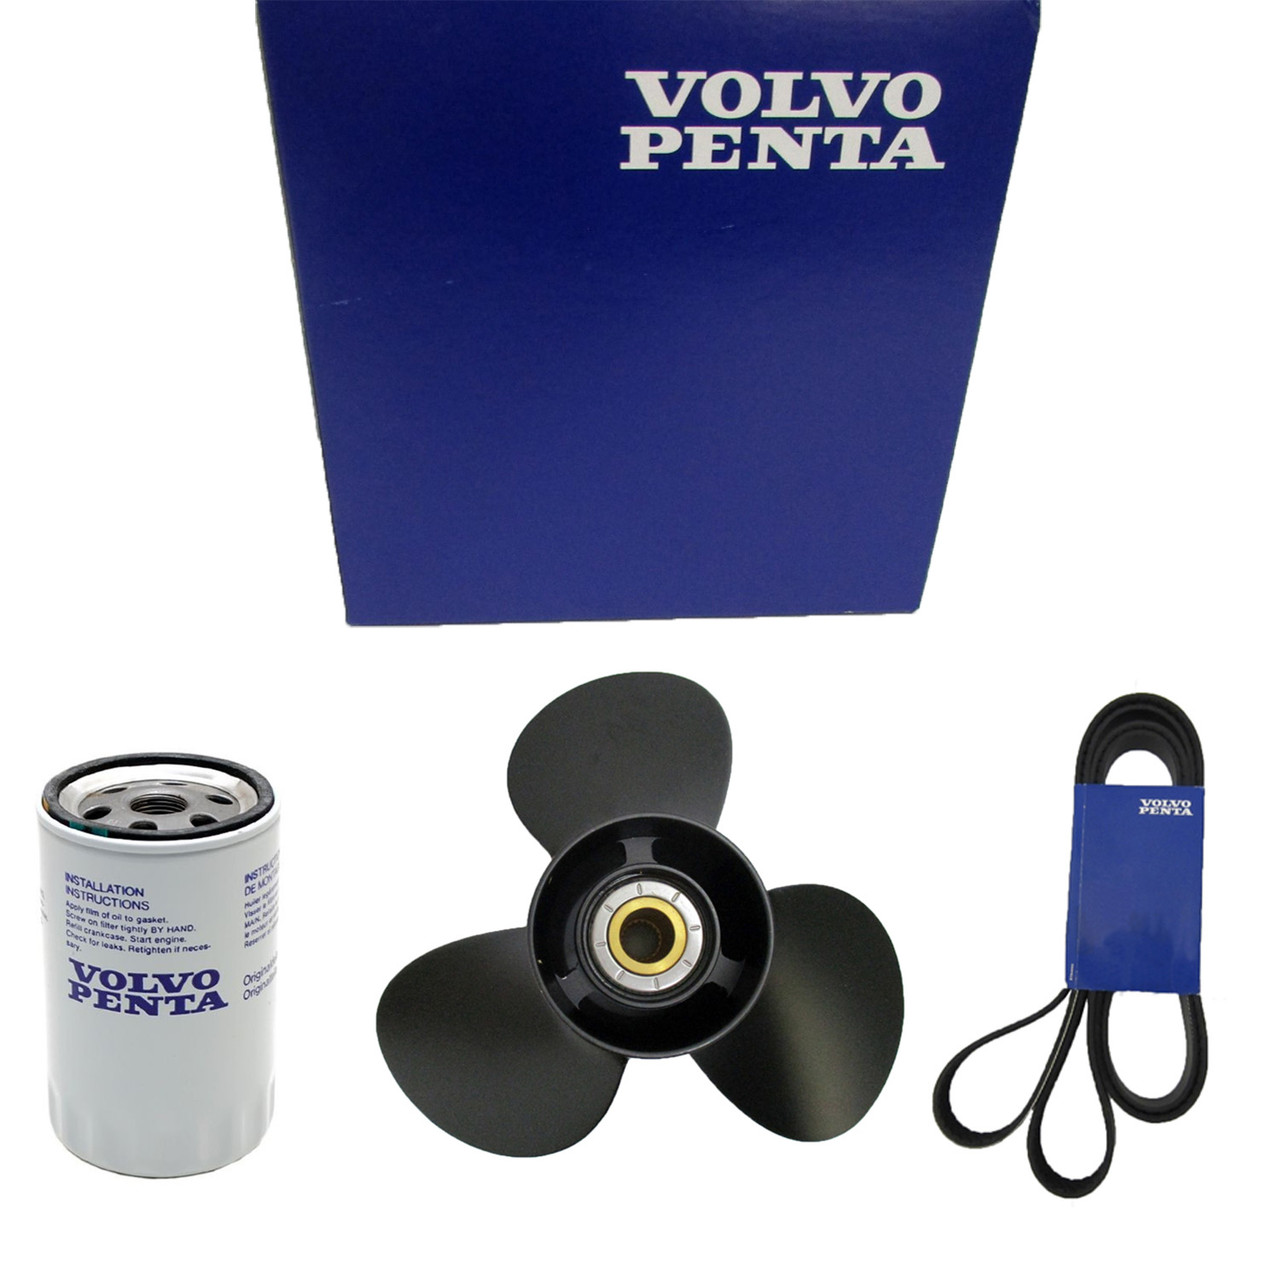 Volvo Penta New OEM Power Steering Pump Kit, 3843213